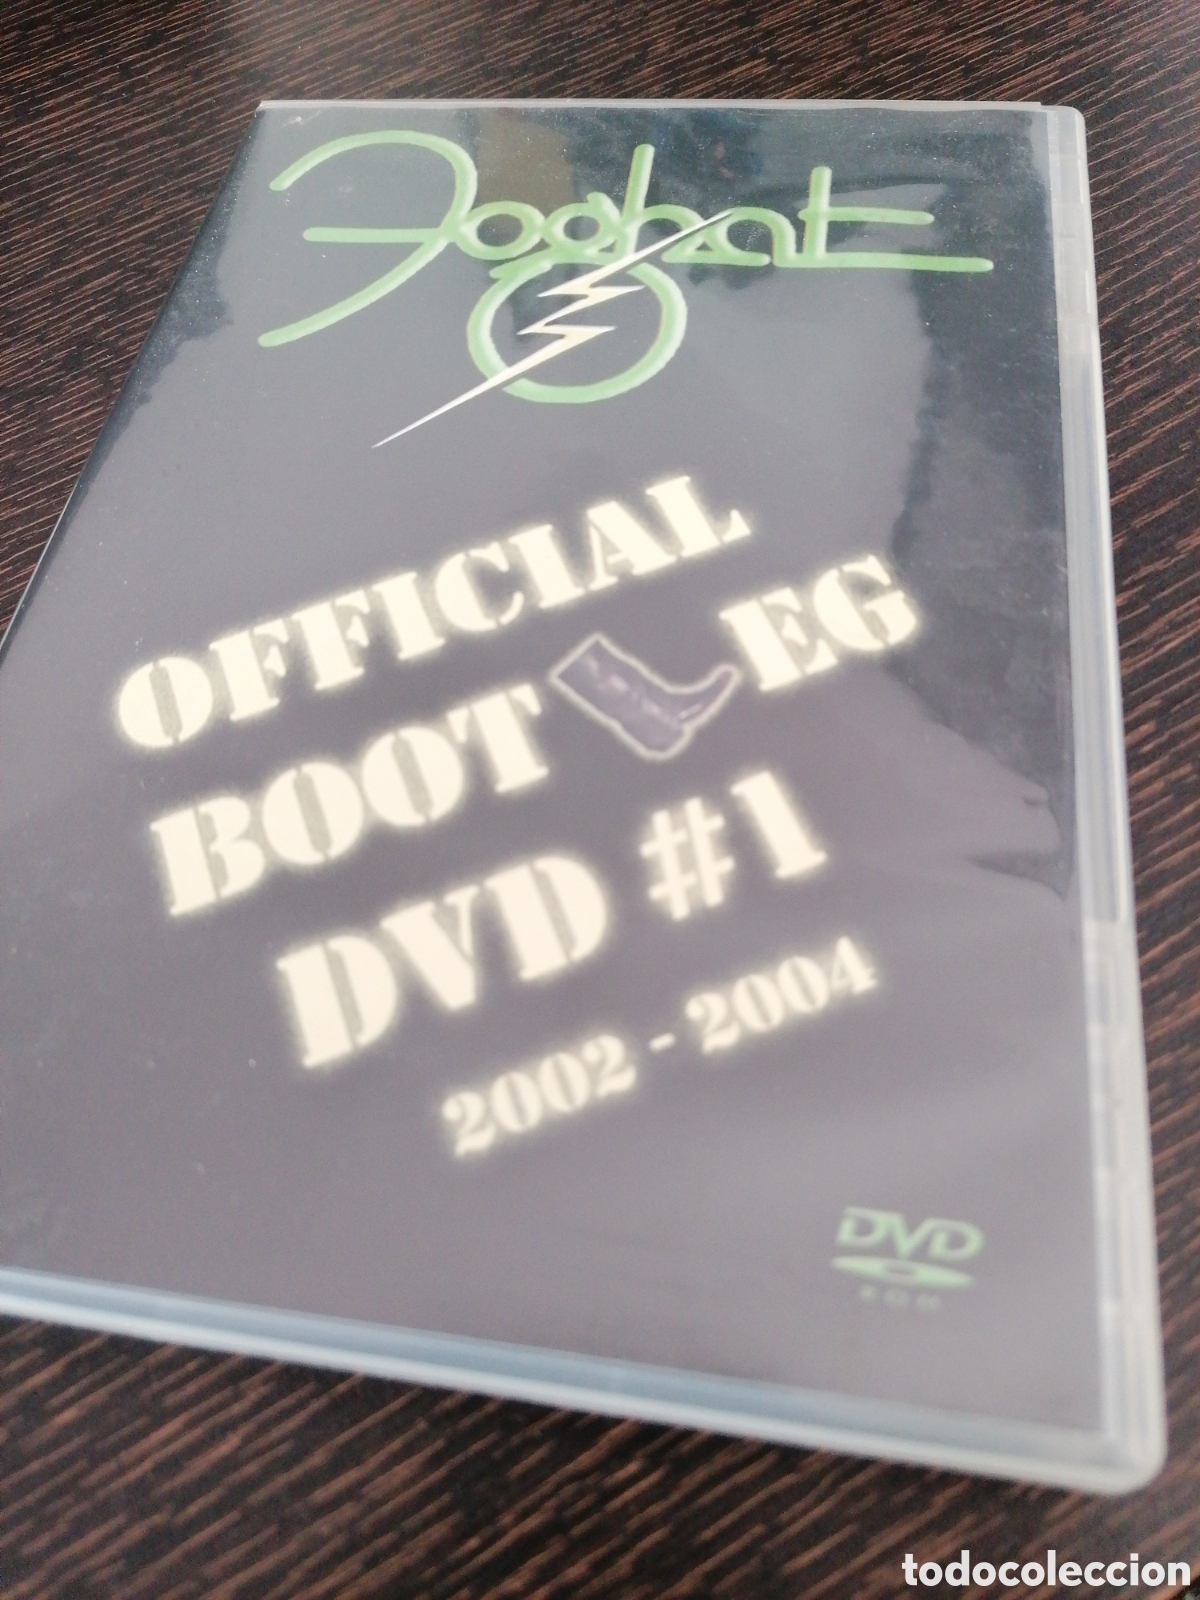 foghat - official bootleg dvd #1 2002-2004 - Compra venta en todocoleccion